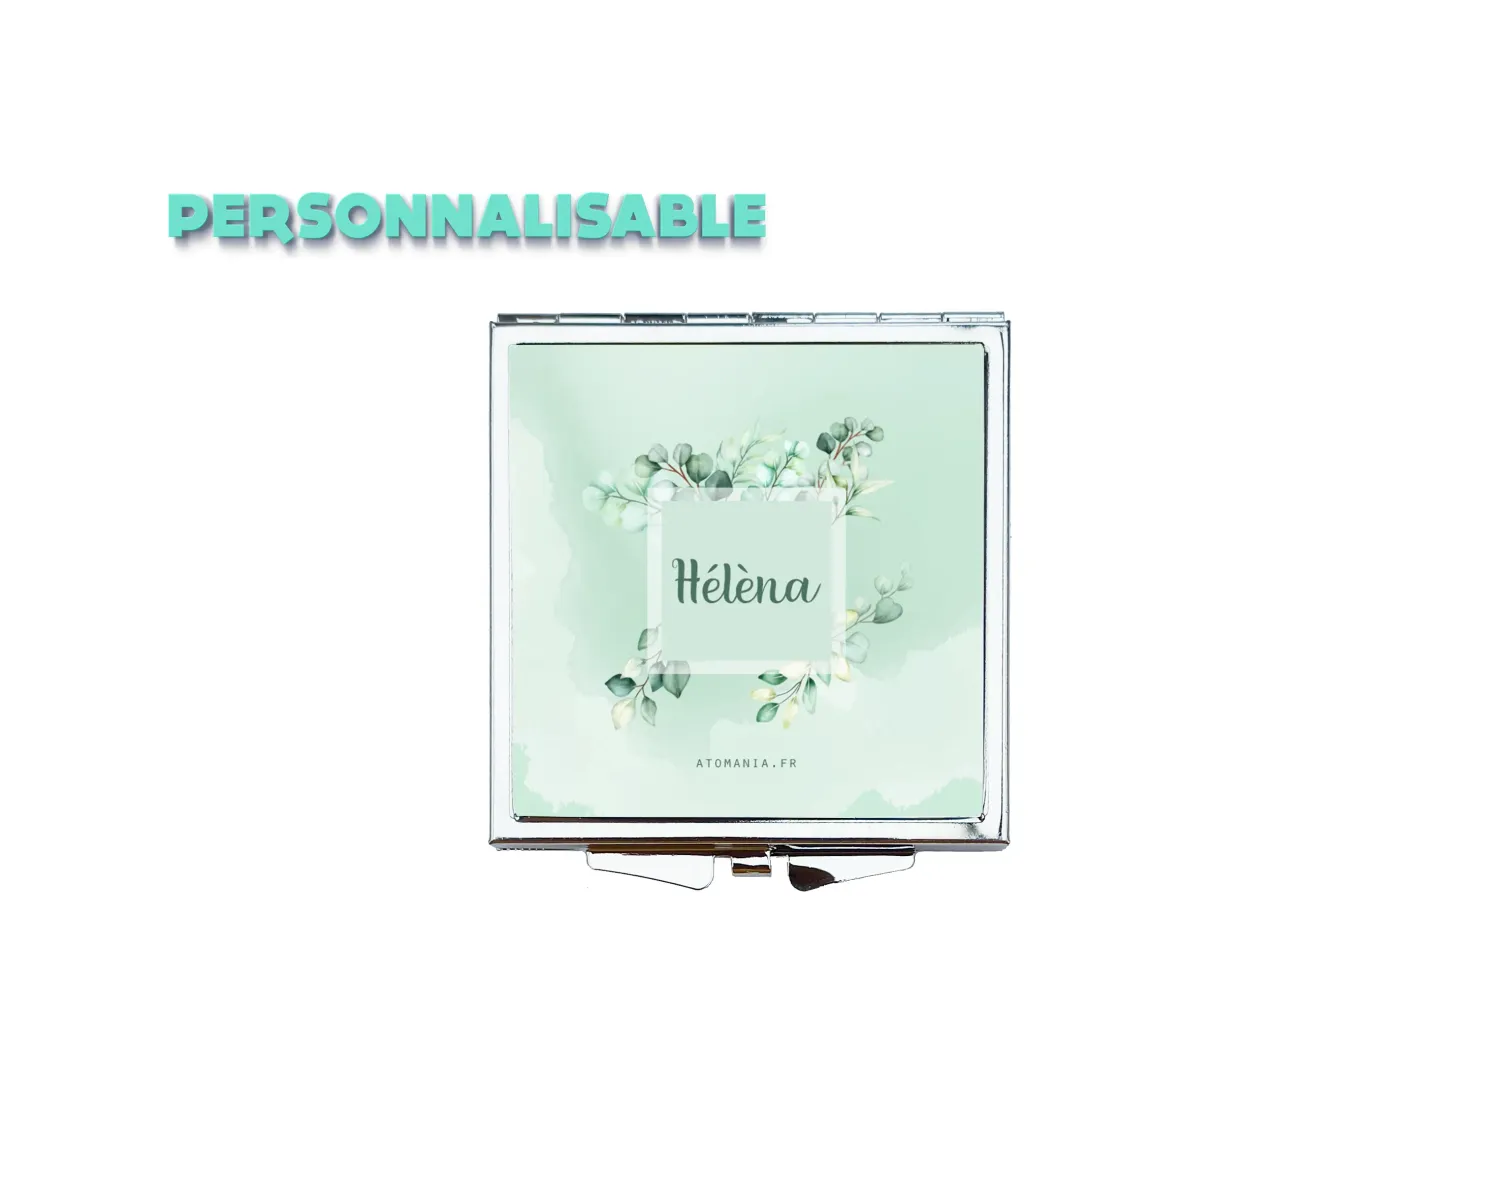 Offrez un cadeau raffiné : le Miroir de Sac Personnalisable Feuillage d'Atomania, un accessoire élégant aux tons verts pastel apaisants